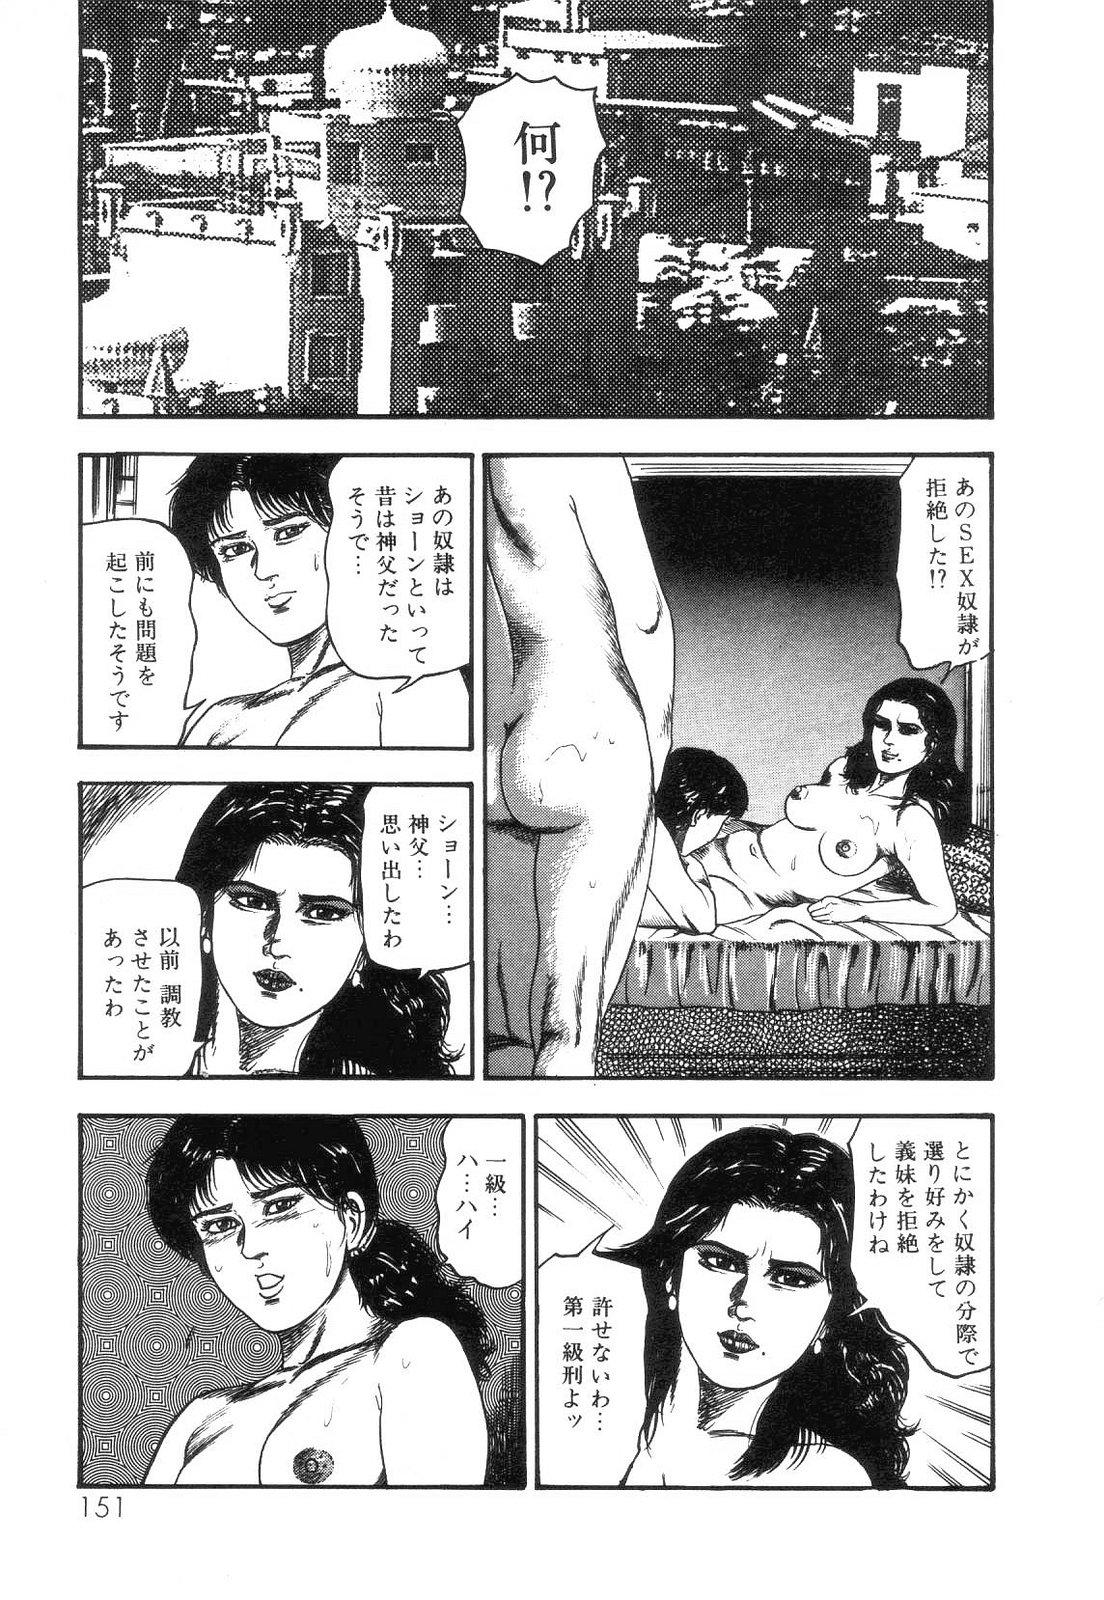 Shiro no Mokushiroku Vol. 4 - Bichiku Karen no Shou 152